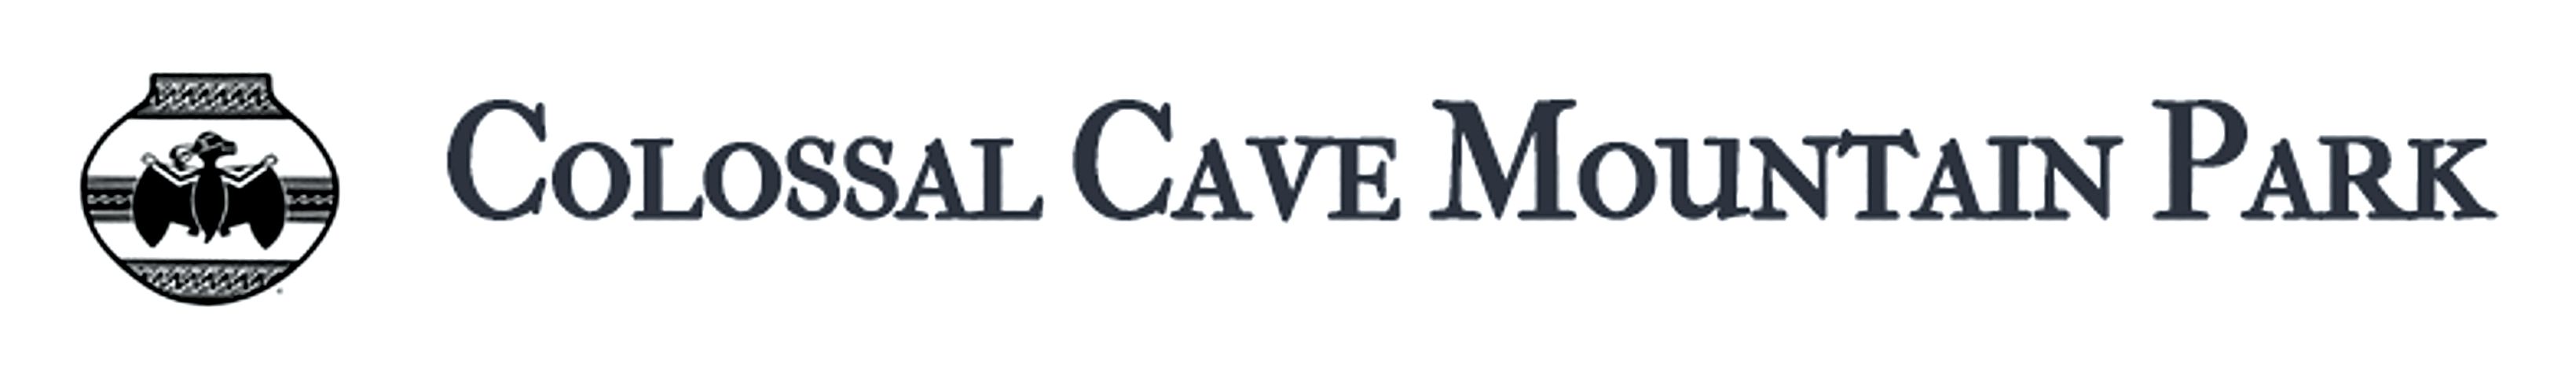 Colossal Caverns Park Logo